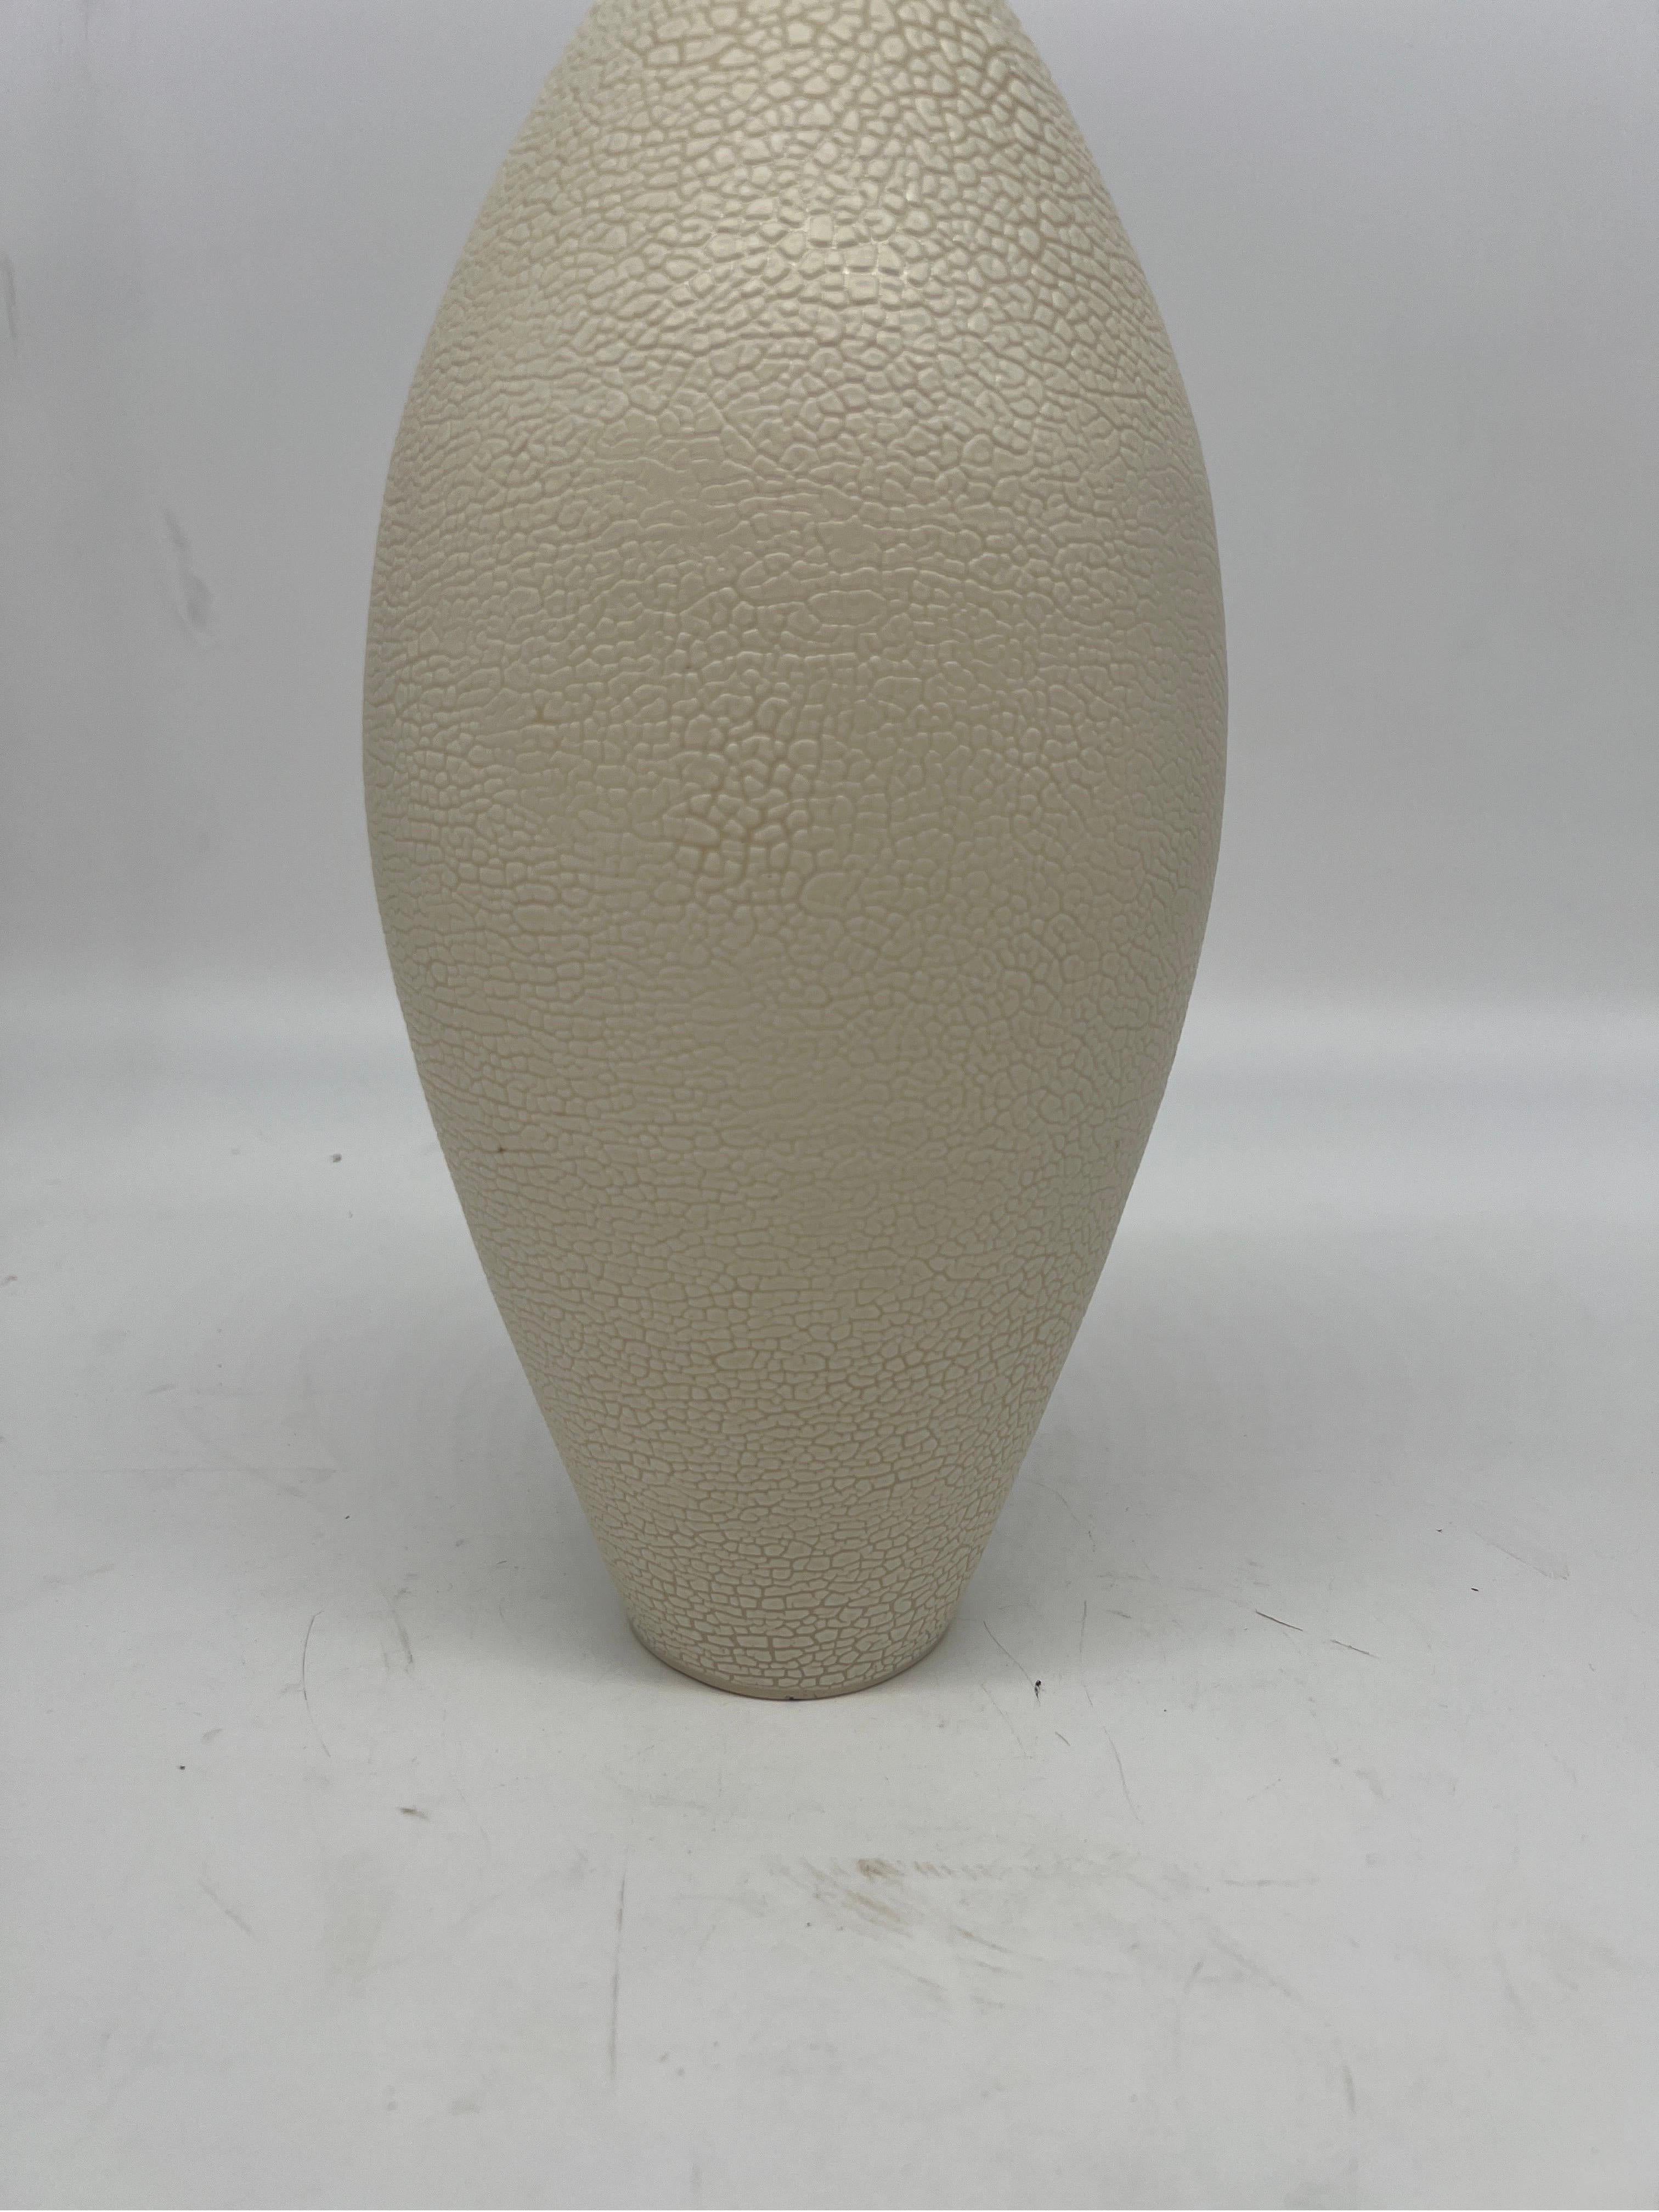 Modernist Hand Thrown Japanese Inspired Ceramic Vase For Sale 2